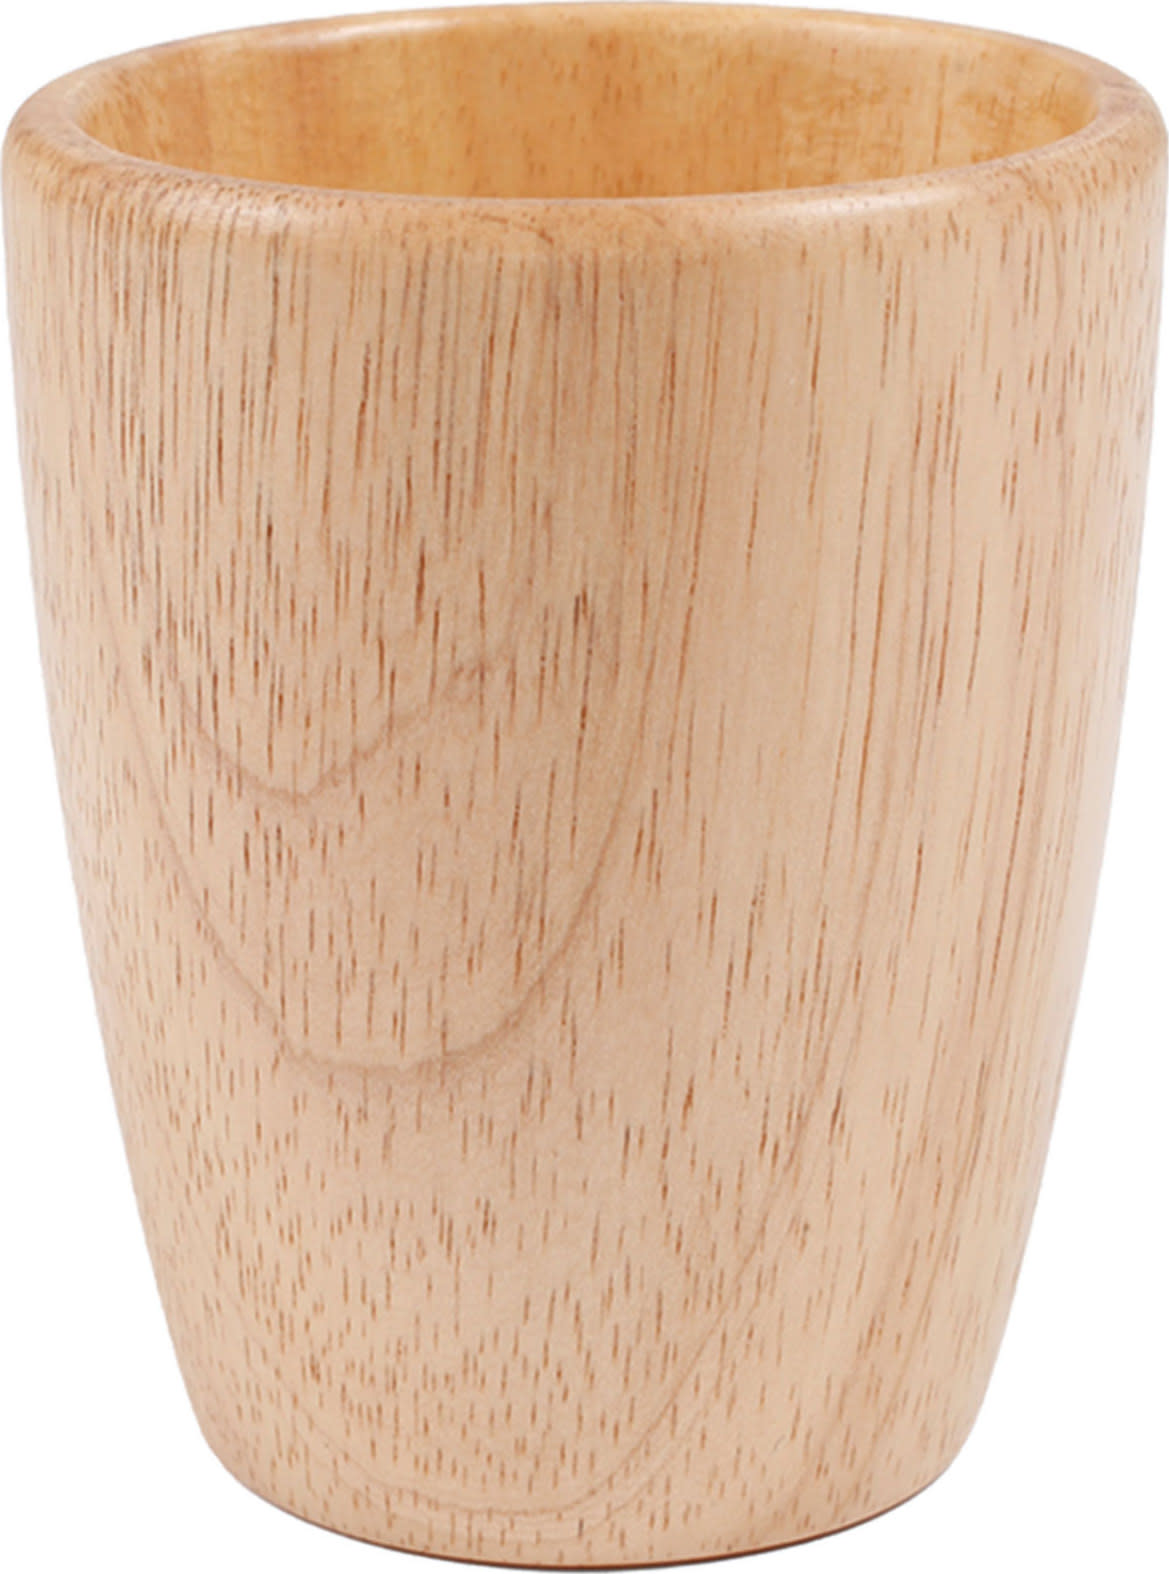 Stabilotherm Hevea Cup Hevea Wood